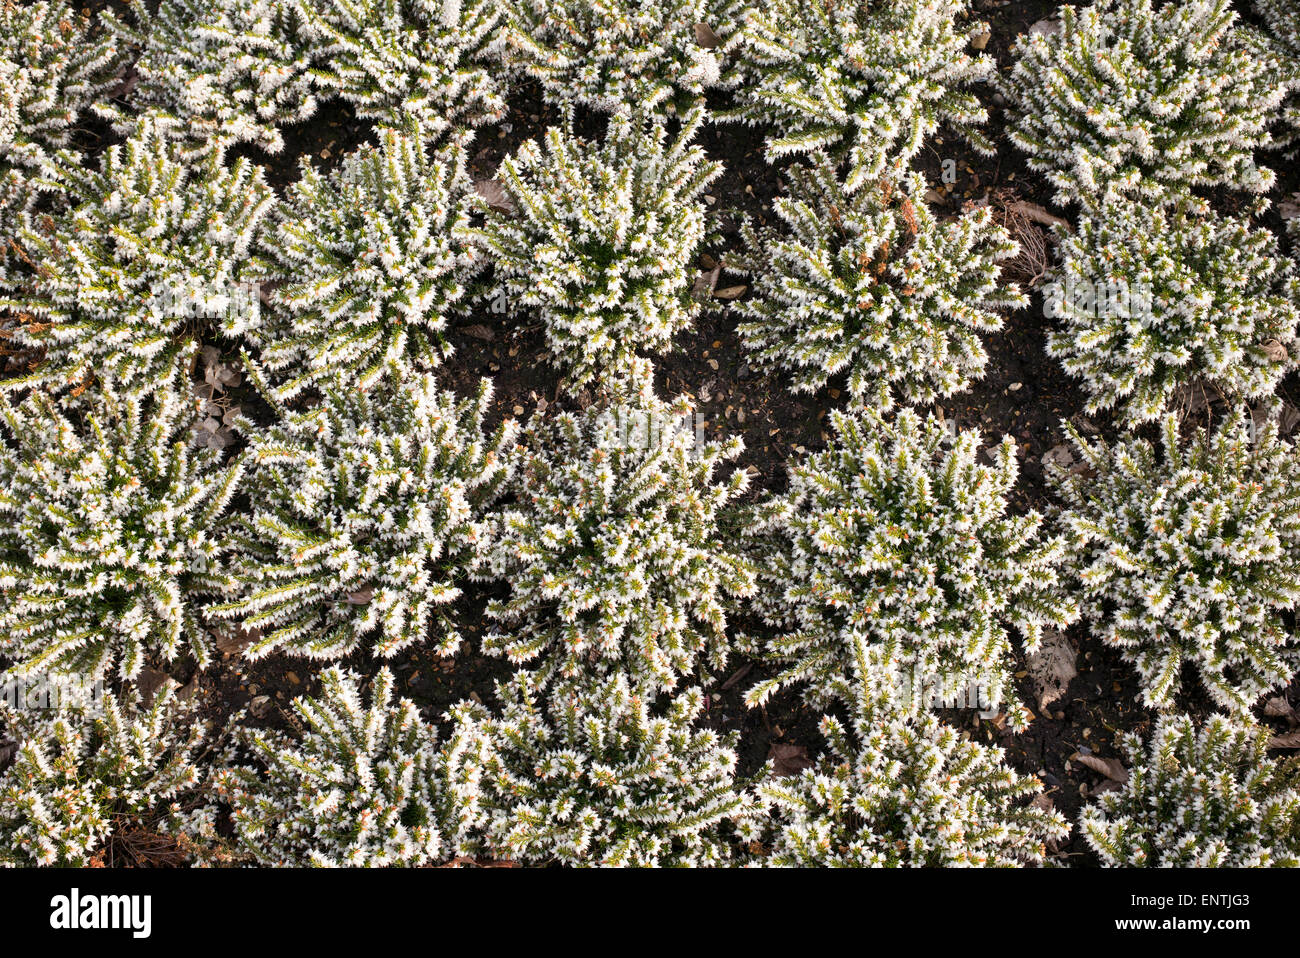 Erica x darleyensis 'white spring surprise'. Flowering heather pattern Stock Photo